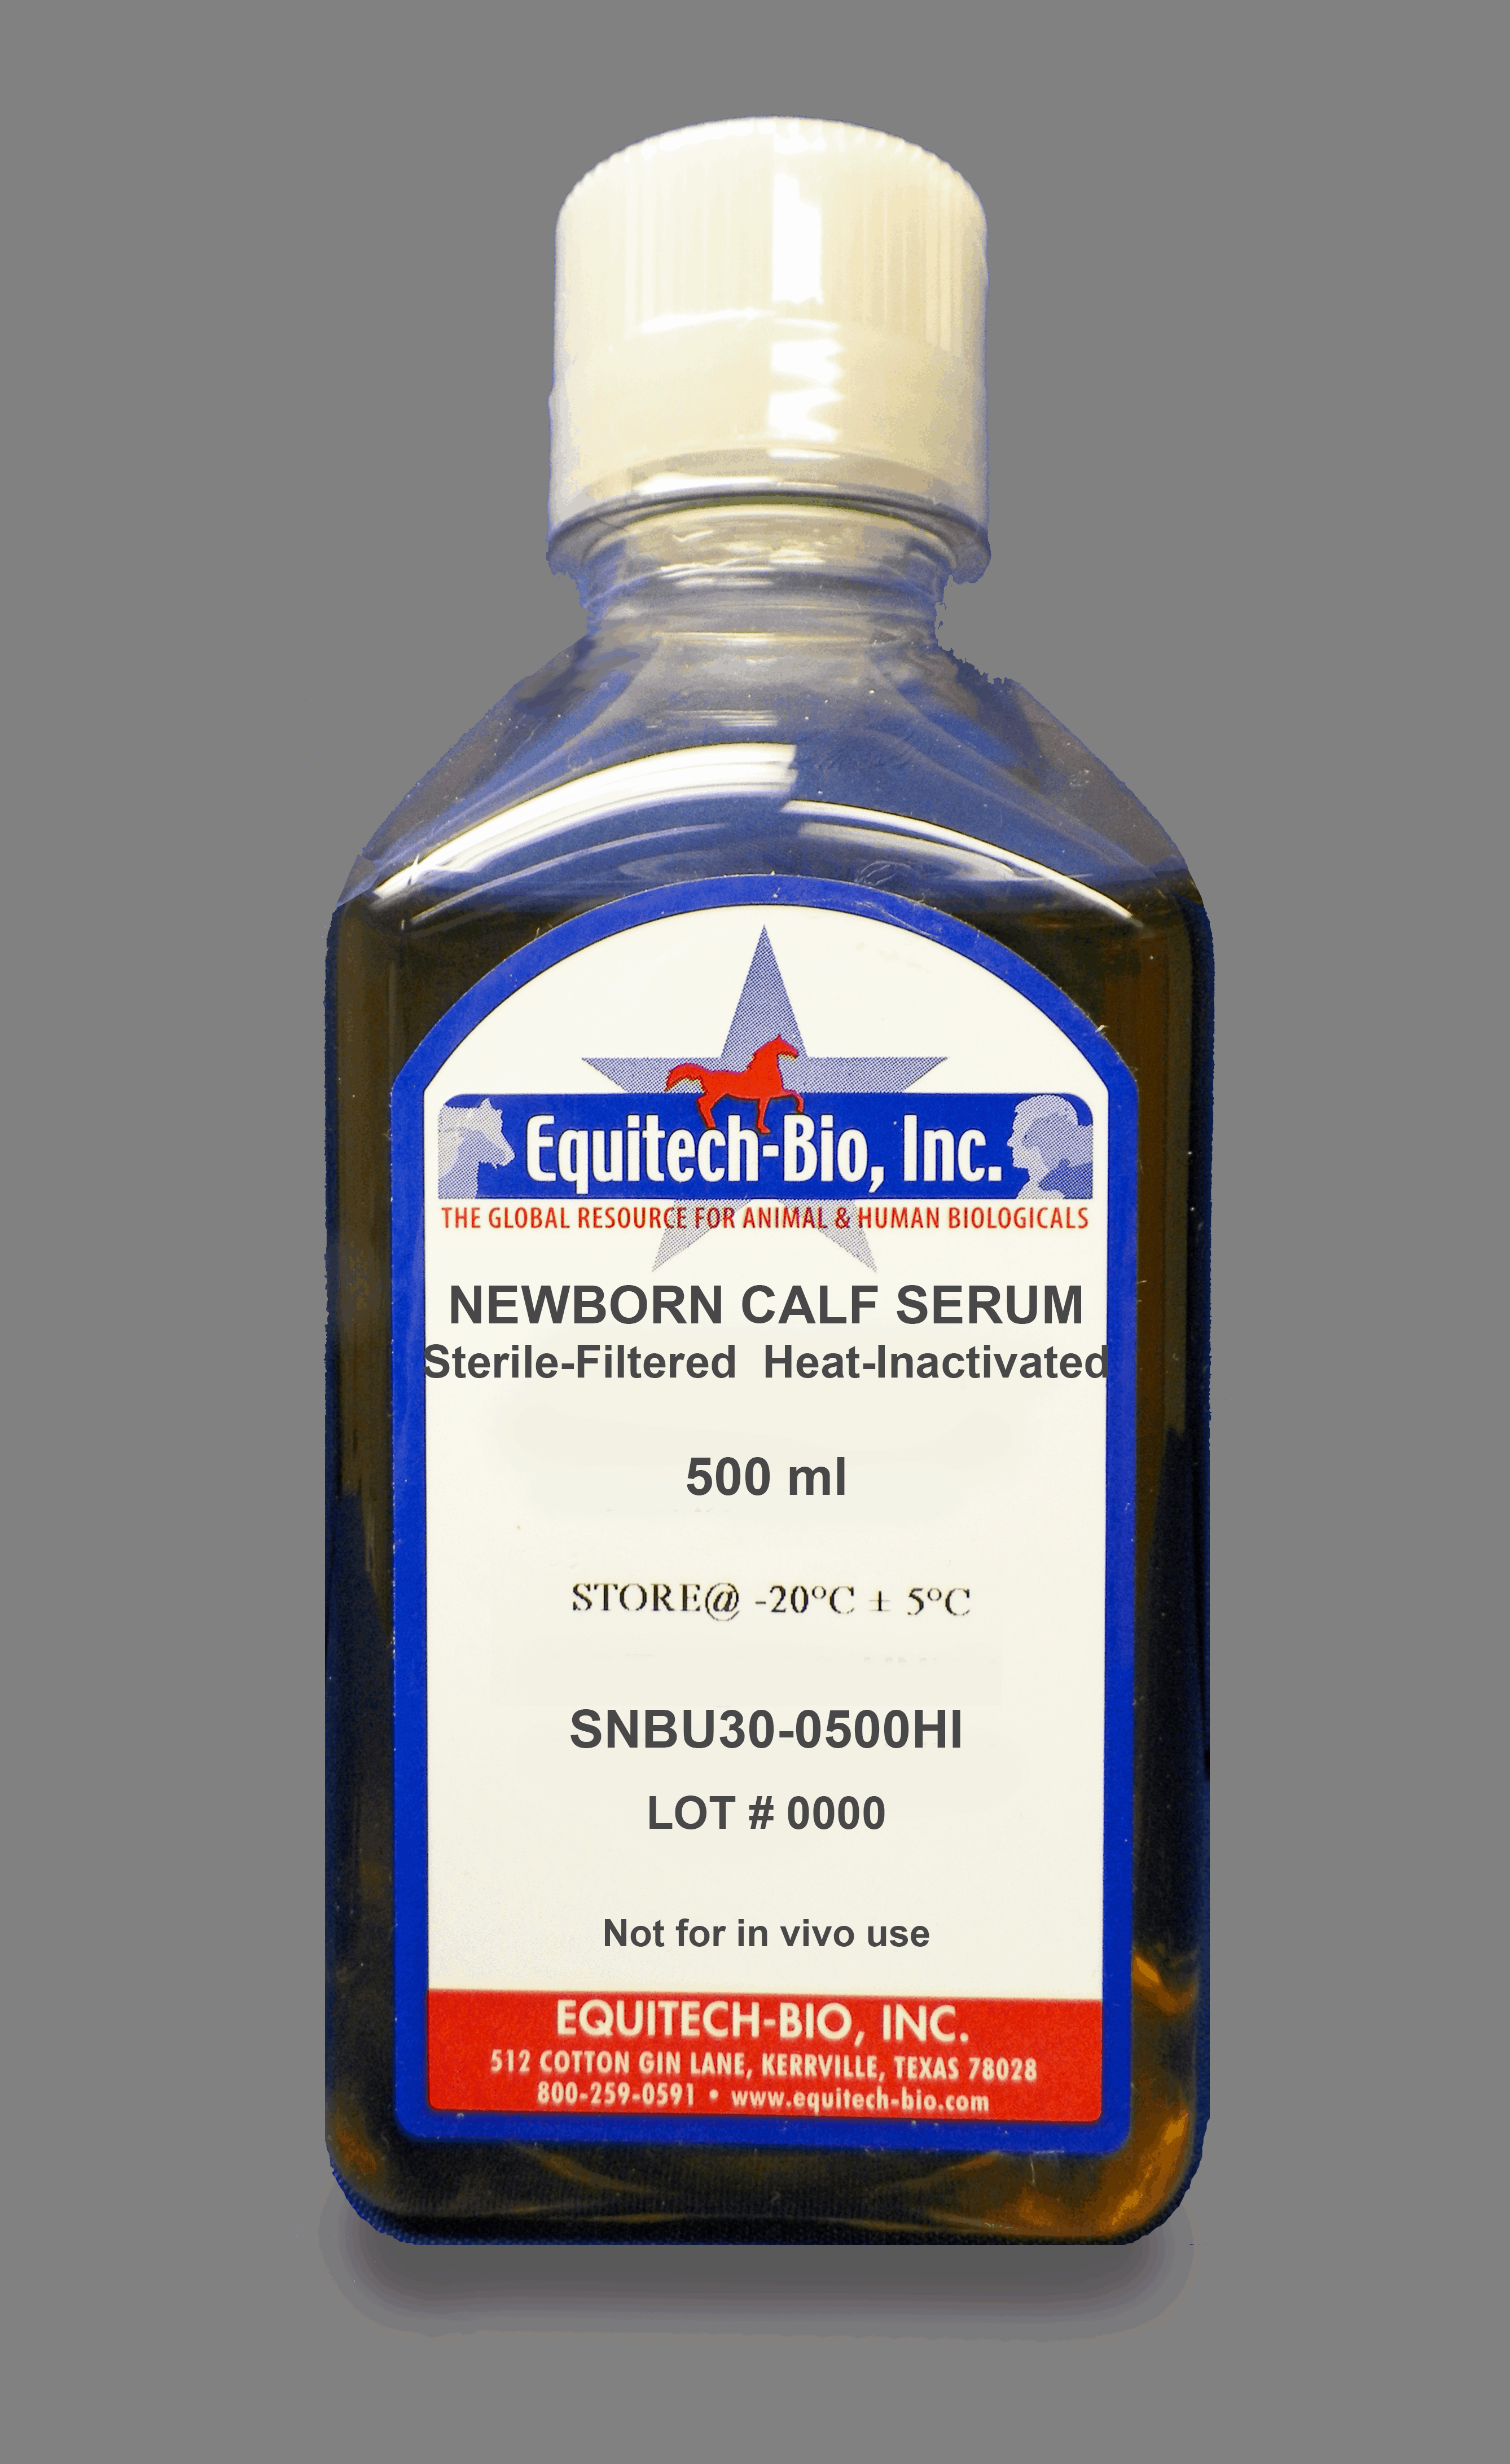 SNBU30 -- Sterile Filtered Newborn Calf Serum